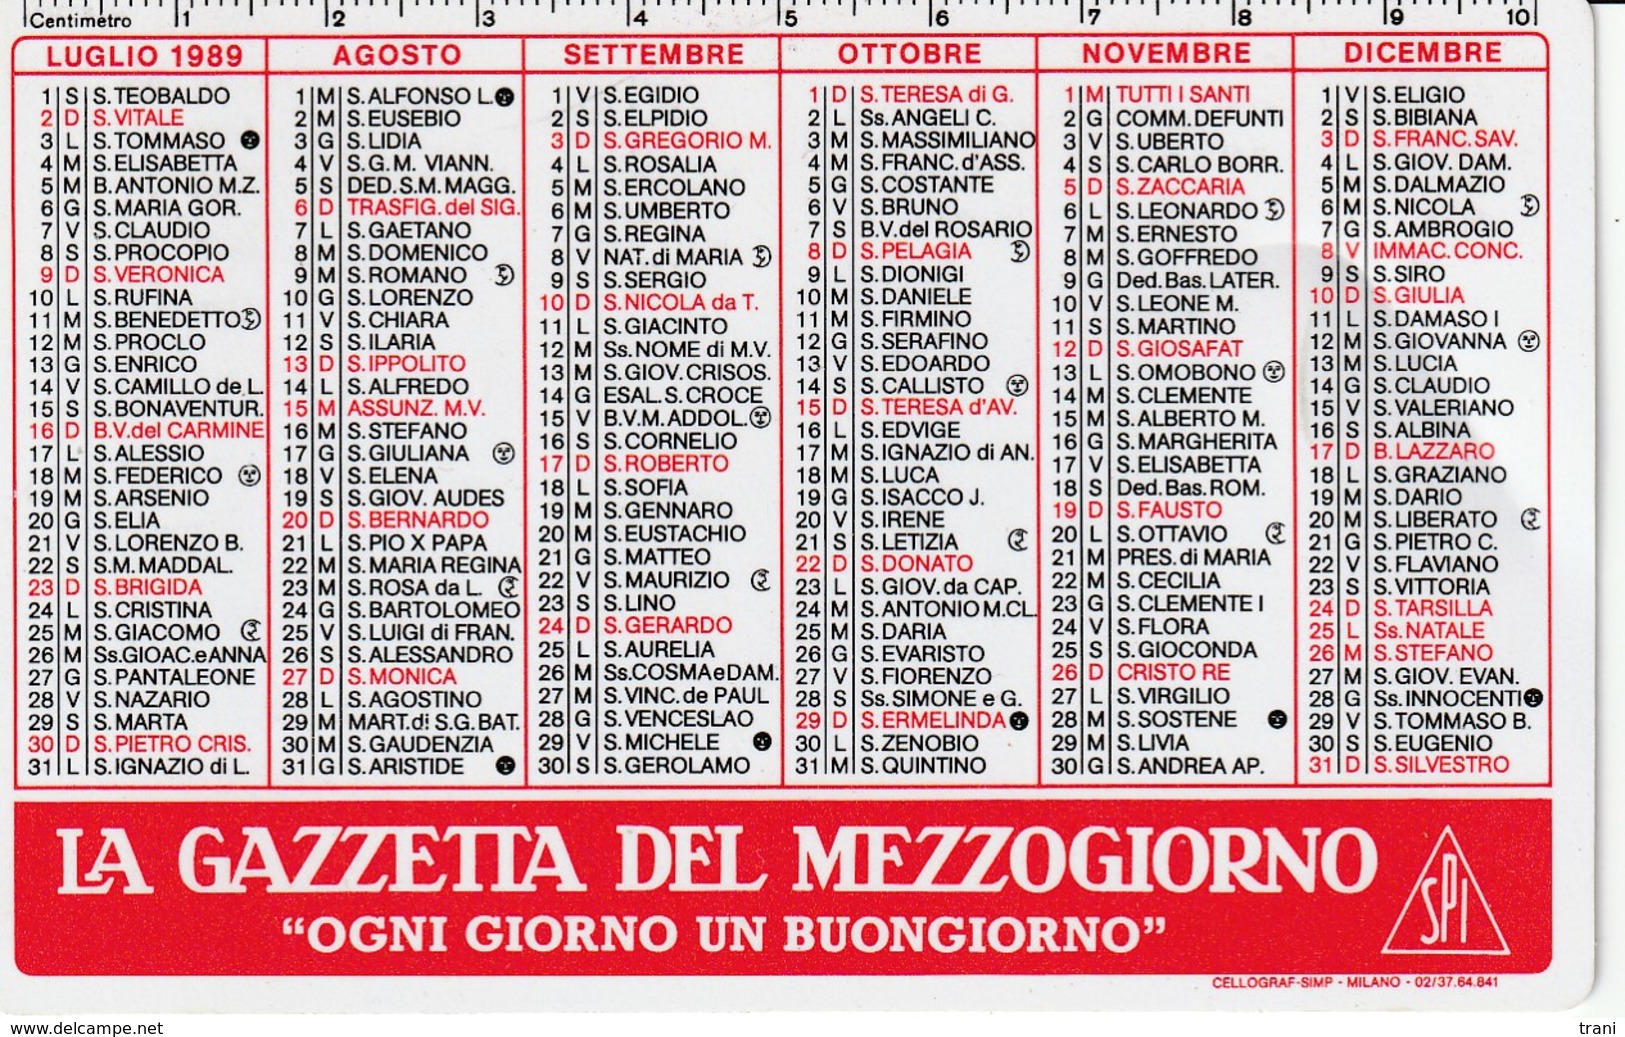 CALENDARIO TASCABILE - LA GAZZETTA DEL MEZZOGIORNO - Anno 1989 - Formato Piccolo : 1991-00